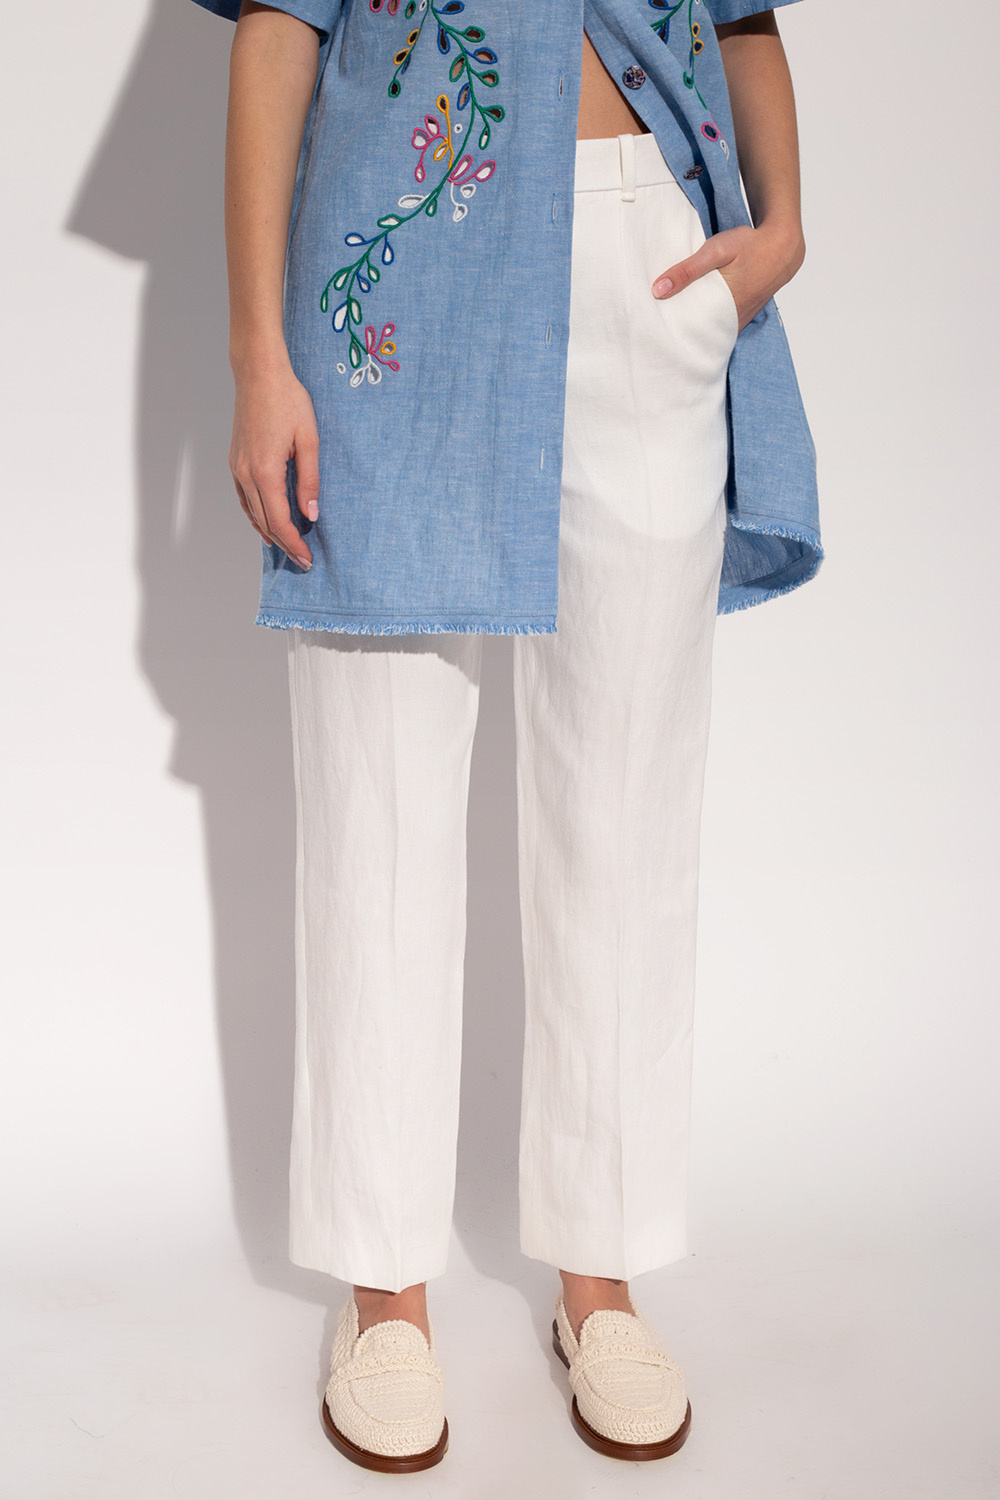 Chloé Linen pleat-front trousers